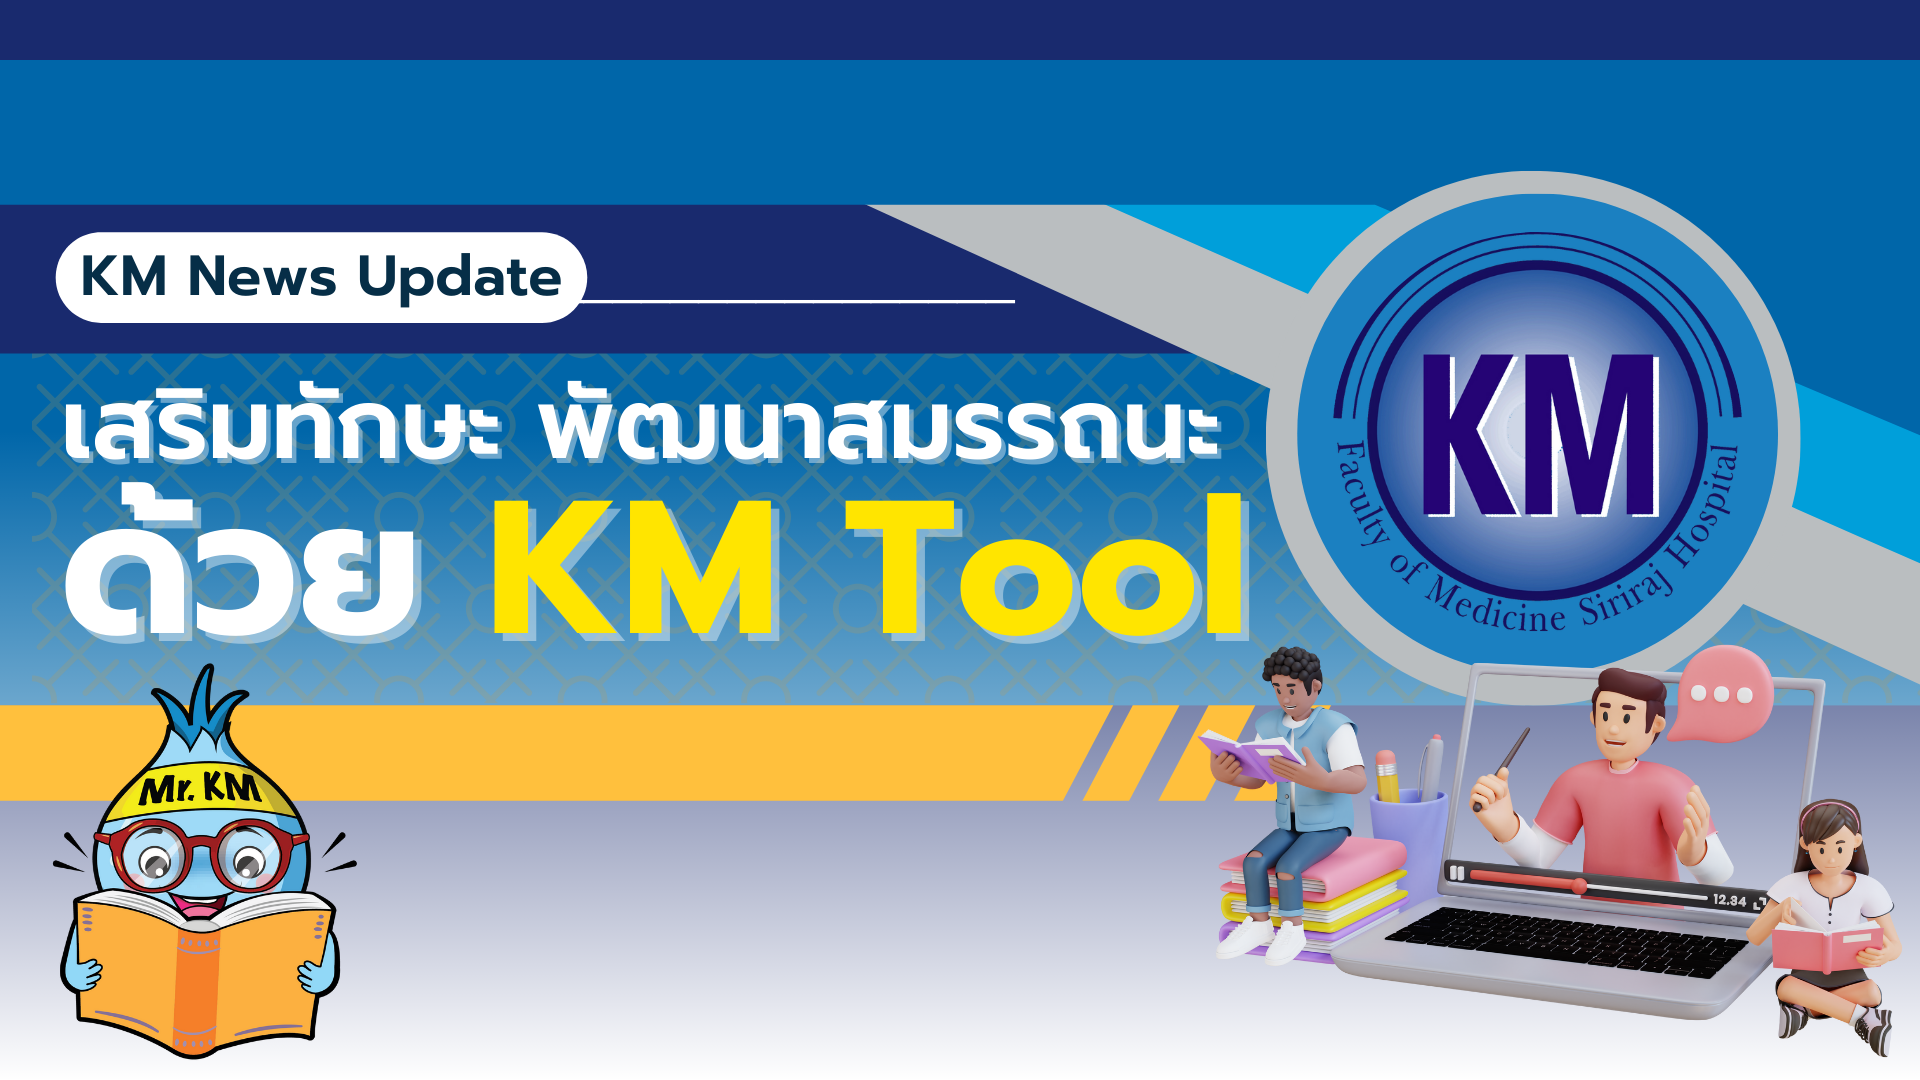 KM News : เสริมทักษะ พัฒนาสมรรถนะด้วย KM Tool